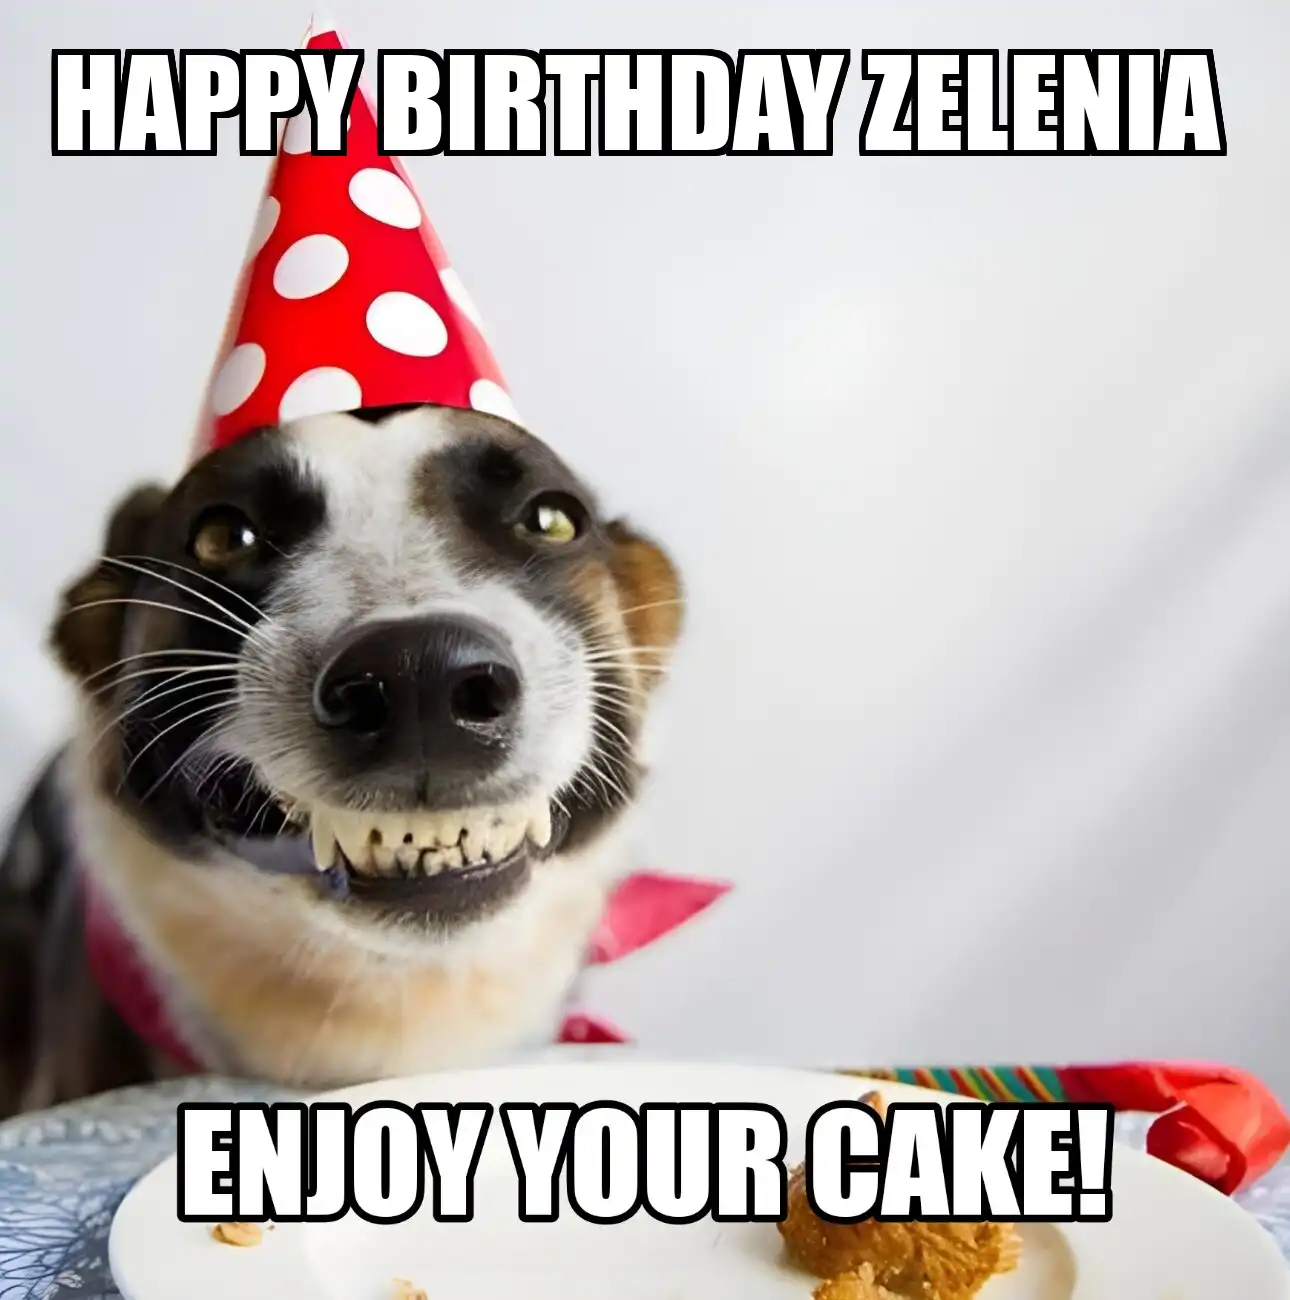 Happy Birthday Zelenia Enjoy Your Cake Dog Meme